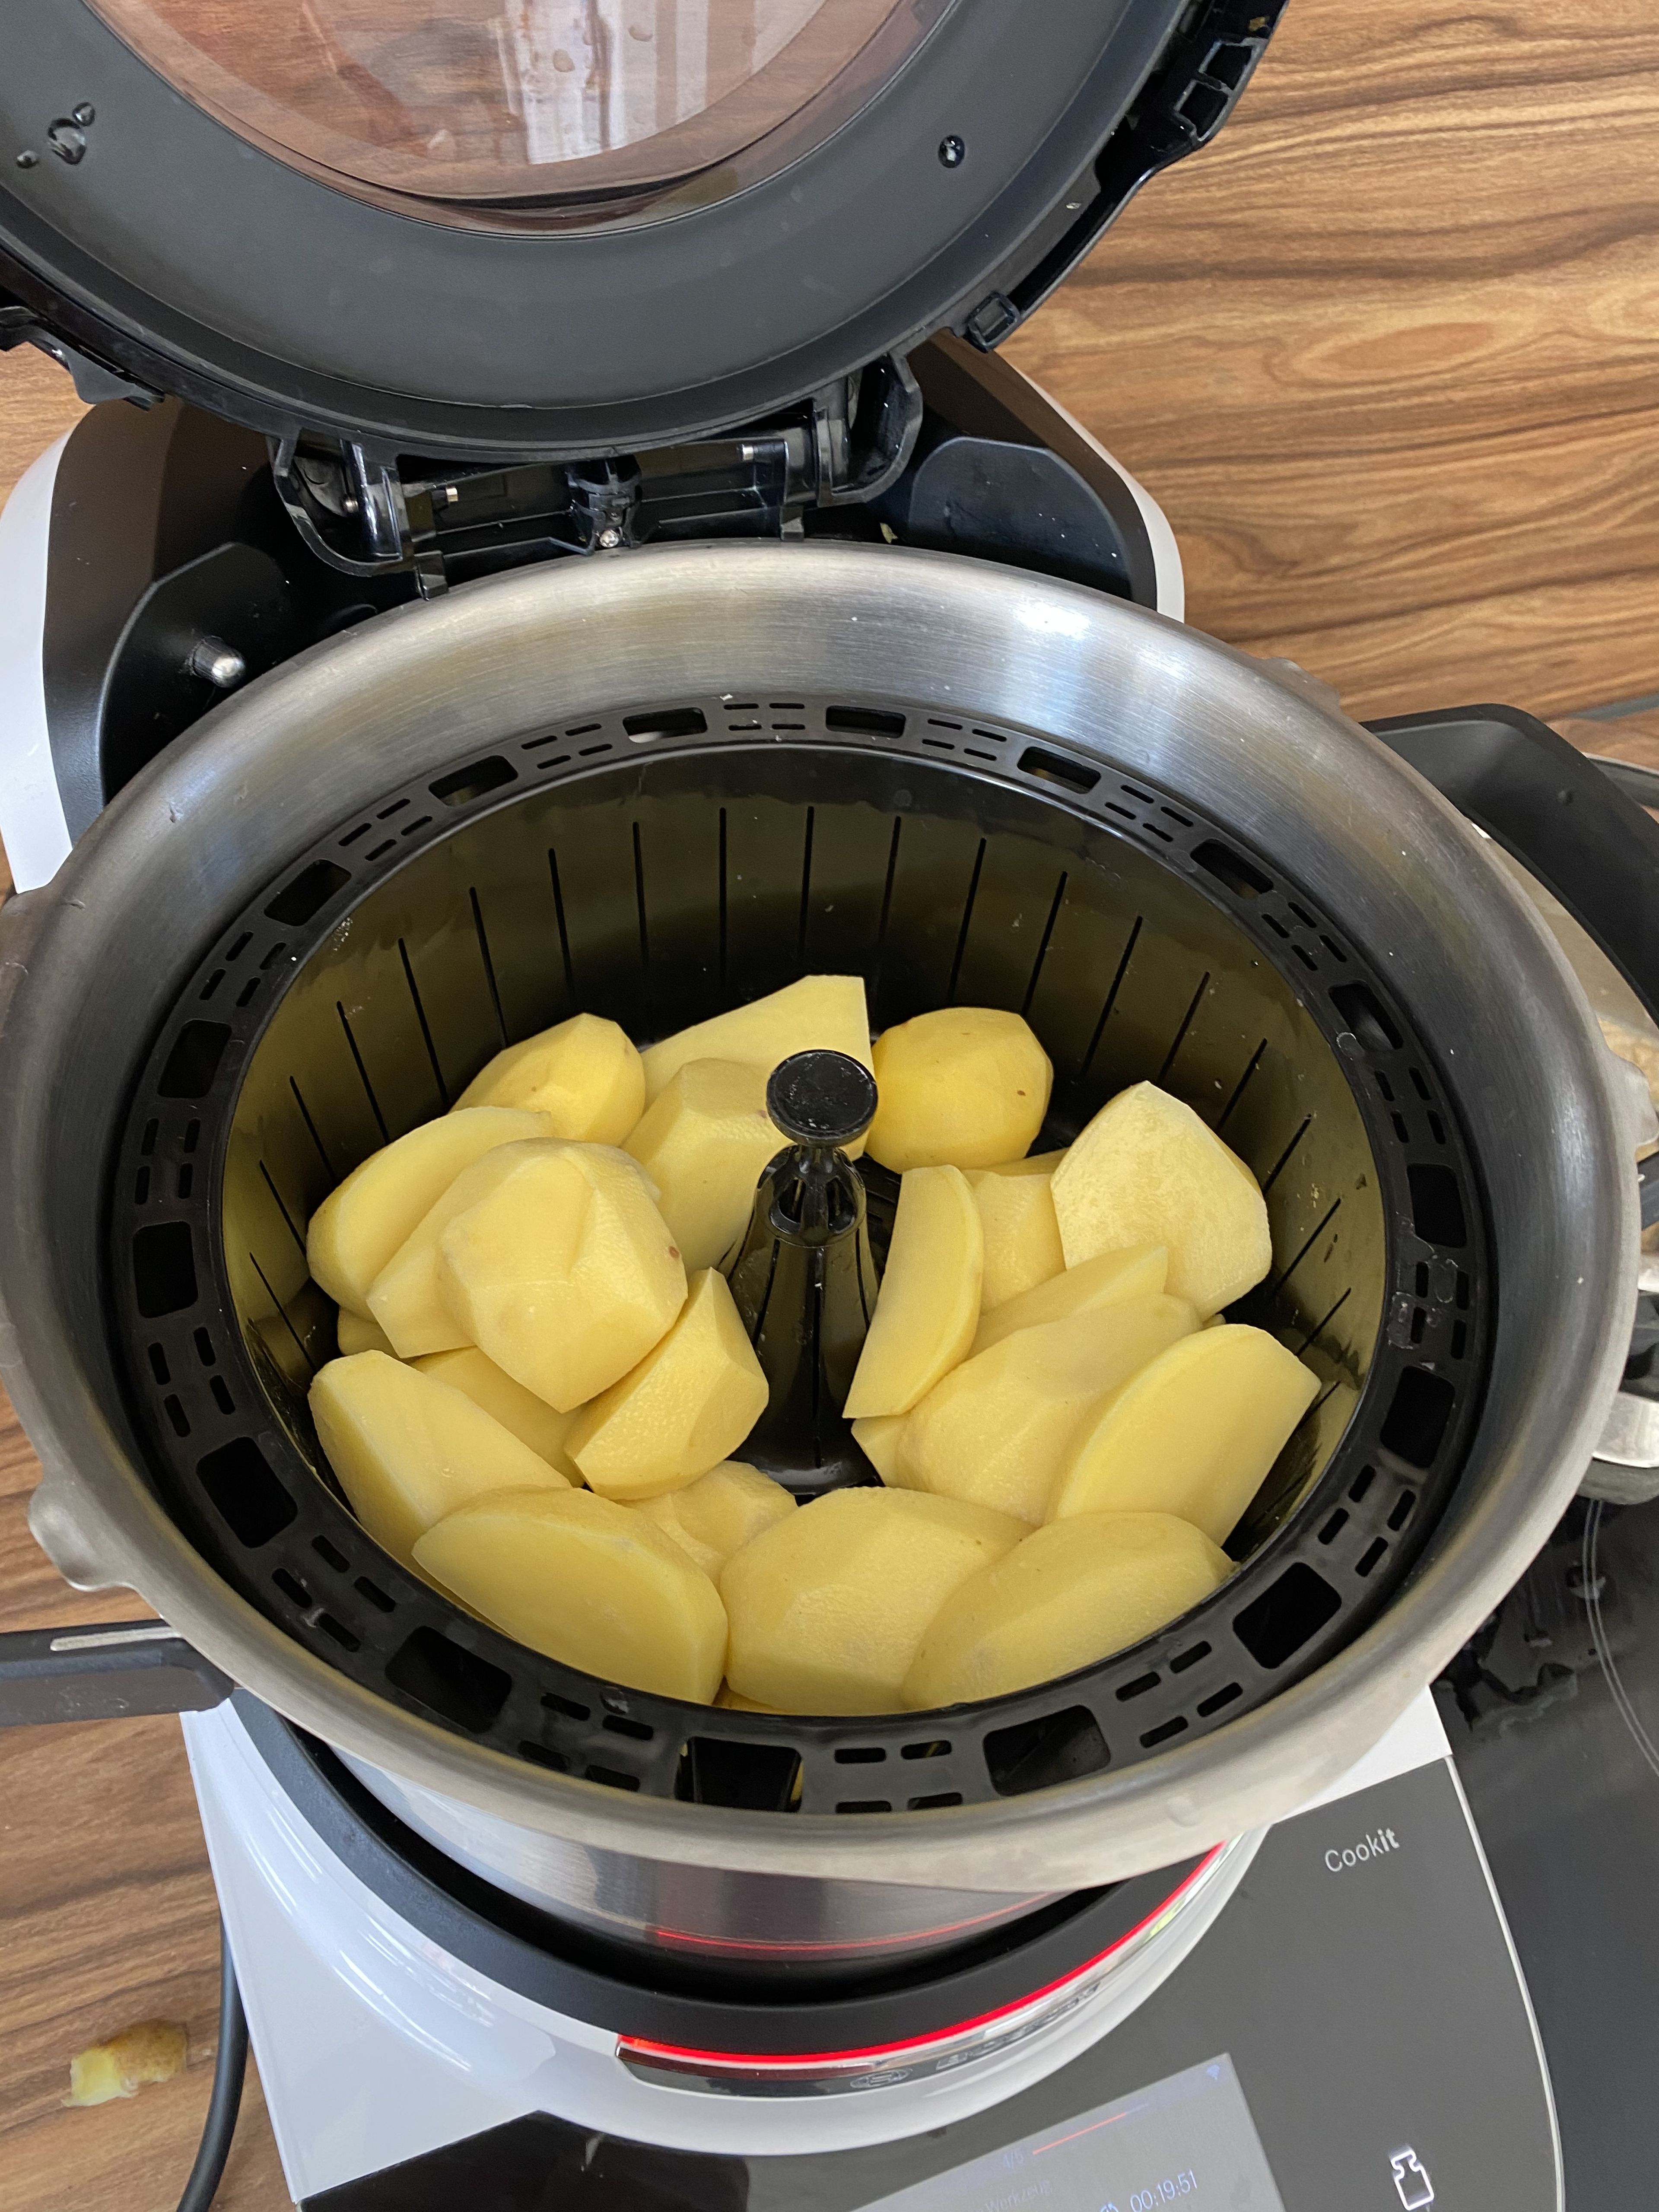 Das Wasser in den Topf füllen. Den Cookit Dampfgareinsatz in den Topf einhängen. Kartoffeln schälen, vierteln und einwiegen. Das Automatikprogramm für Dampfgaren (Hohe Dampfintensität) auswählen. Den Dampfgardeckel auflegen und die Kartoffeln (20 Min.) dämpfen lassen.

Das Automatikprogramm "Dampfgaren" auswählen, Messbecher einsetzen und Kartoffeln für 20 Min. dämpfen.